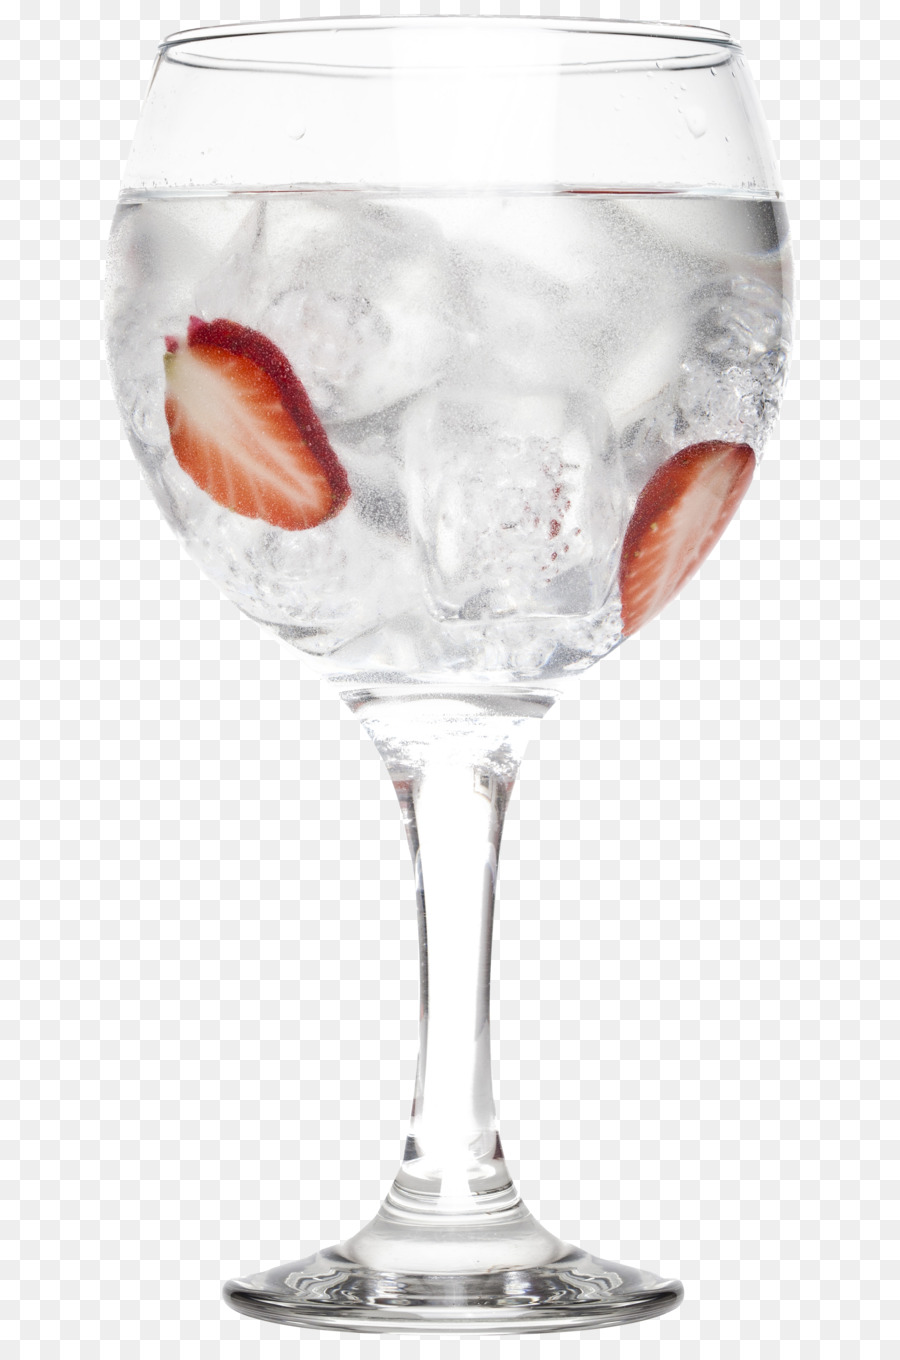 Gin und tonic-Wein-Glas, Cocktail garnieren - Cocktail